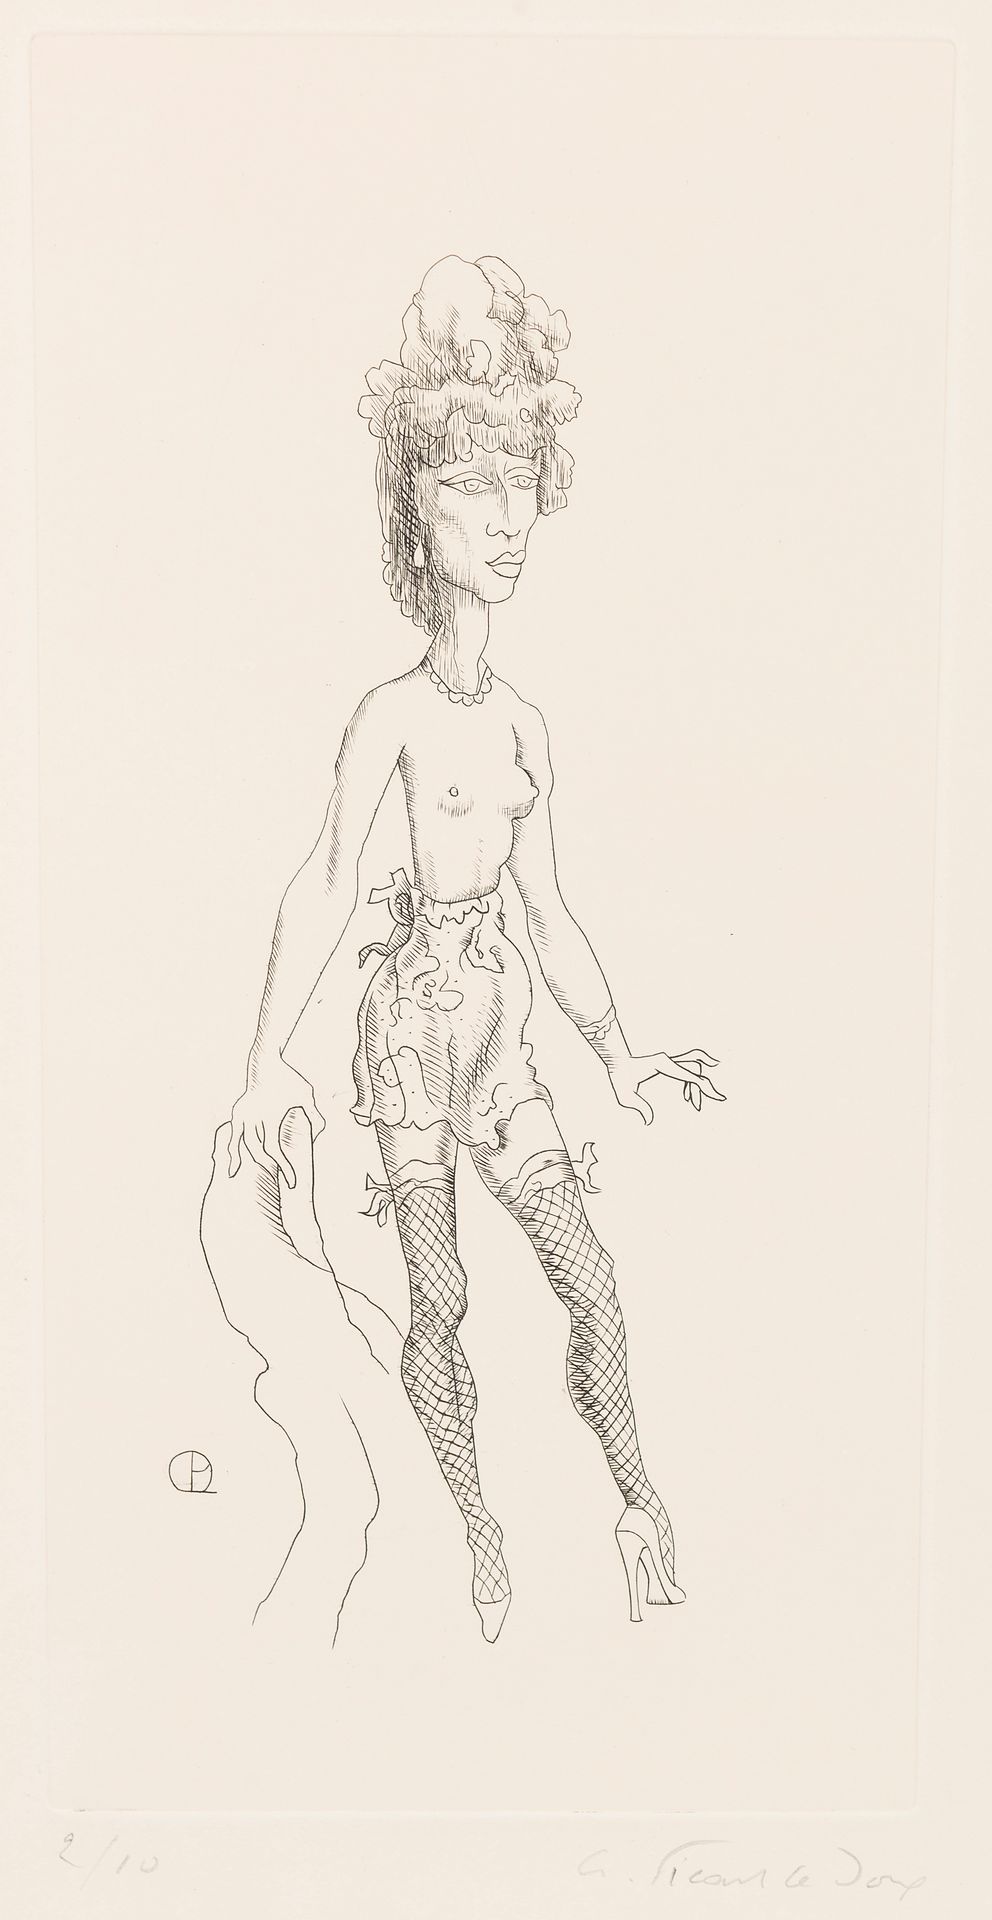 Null 查尔斯-皮卡特-勒杜(1881-1959)
裸体画
八件套版画（网上可查）。
各种尺寸：从23.5 x 18到50.5 x 33厘米